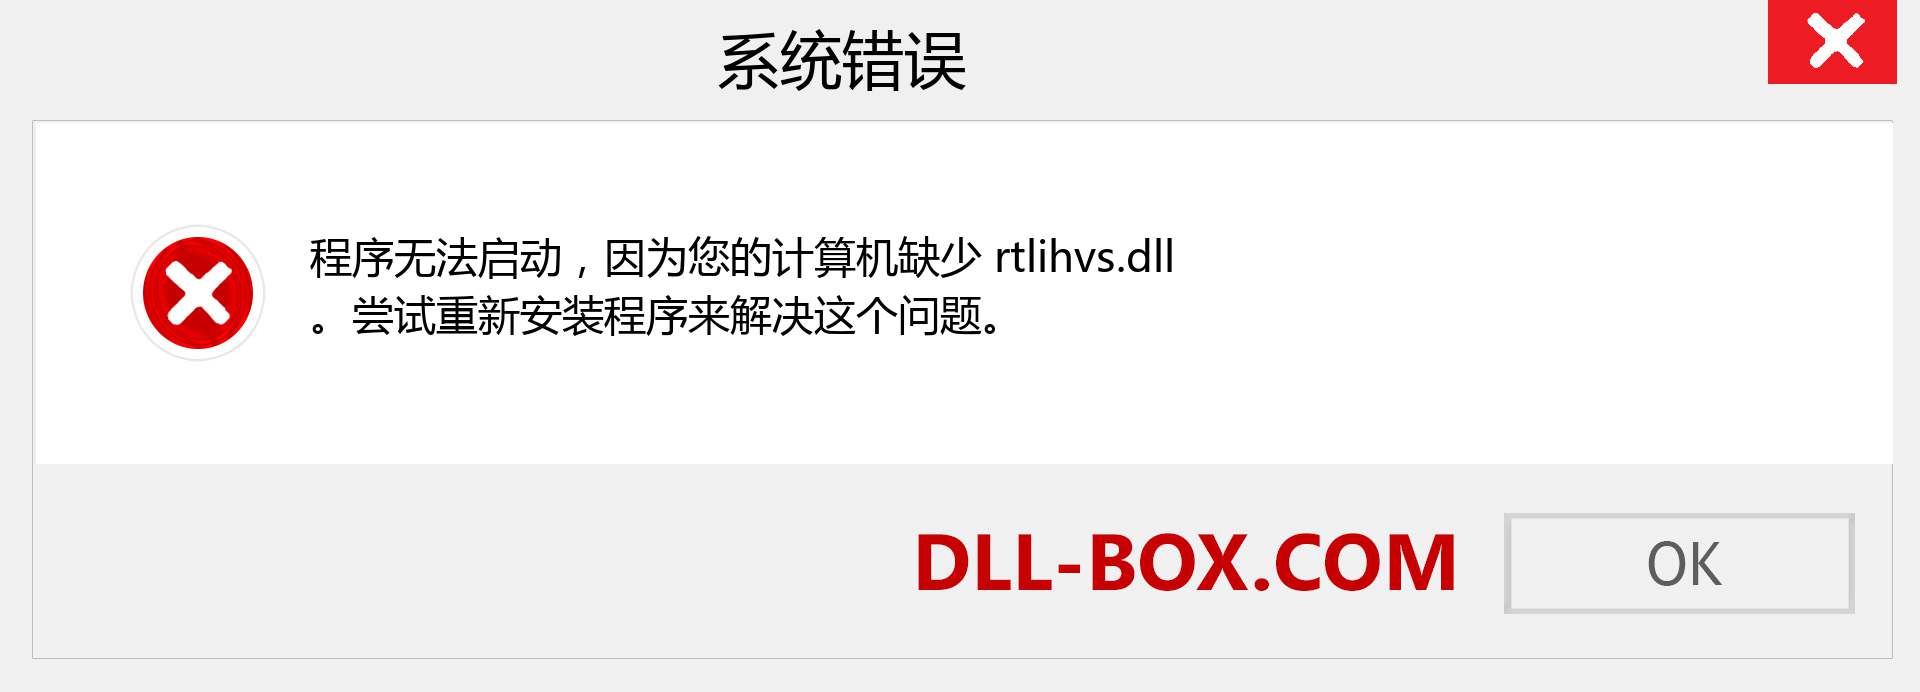 rtlihvs.dll 文件丢失？。 适用于 Windows 7、8、10 的下载 - 修复 Windows、照片、图像上的 rtlihvs dll 丢失错误